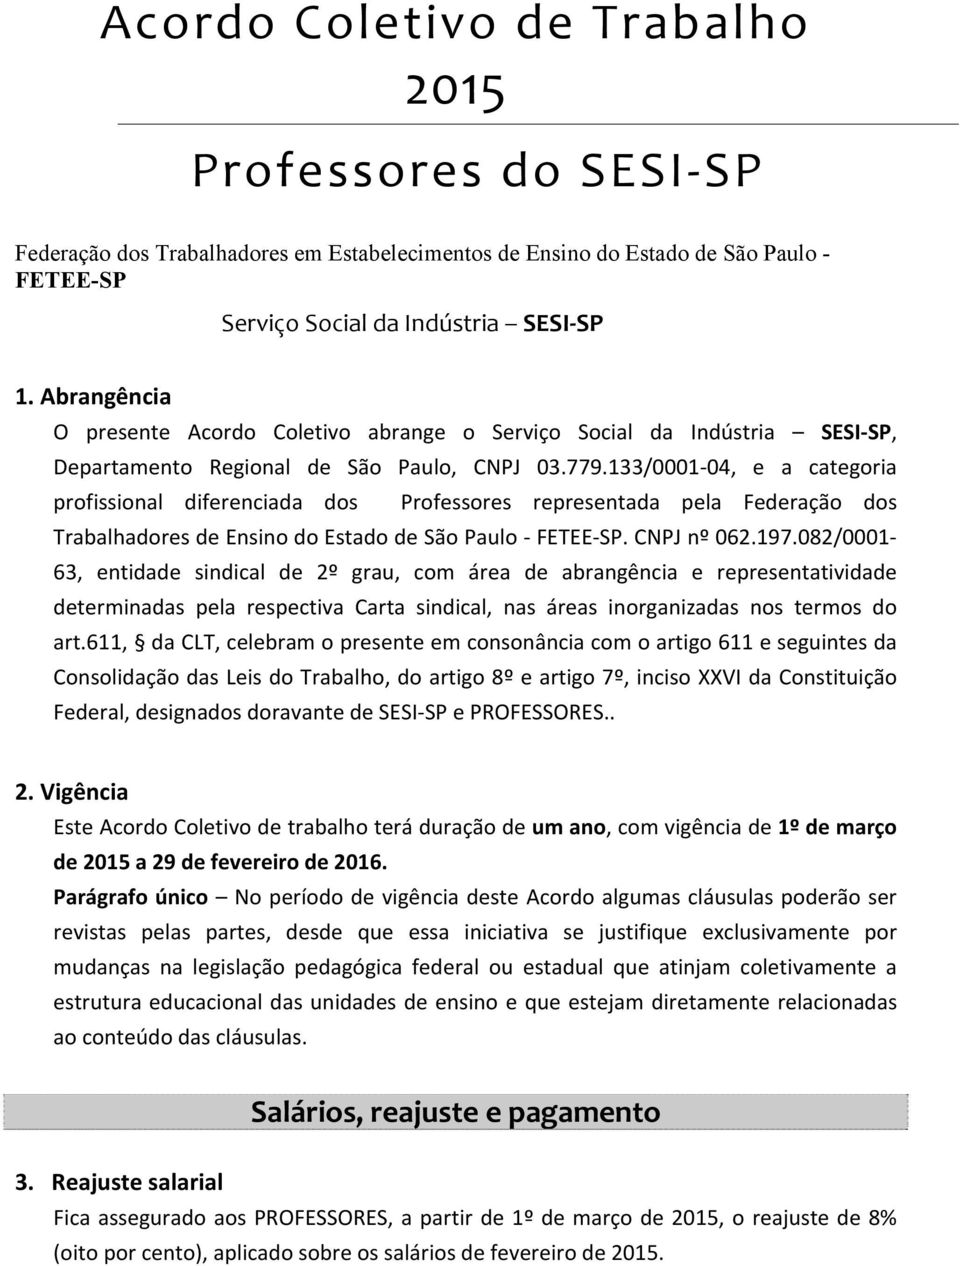 133/0001-04, e a categoria profissional diferenciada dos Professores representada pela Federação dos Trabalhadores de Ensino do Estado de São Paulo - FETEE-SP. CNPJ nº 062.197.